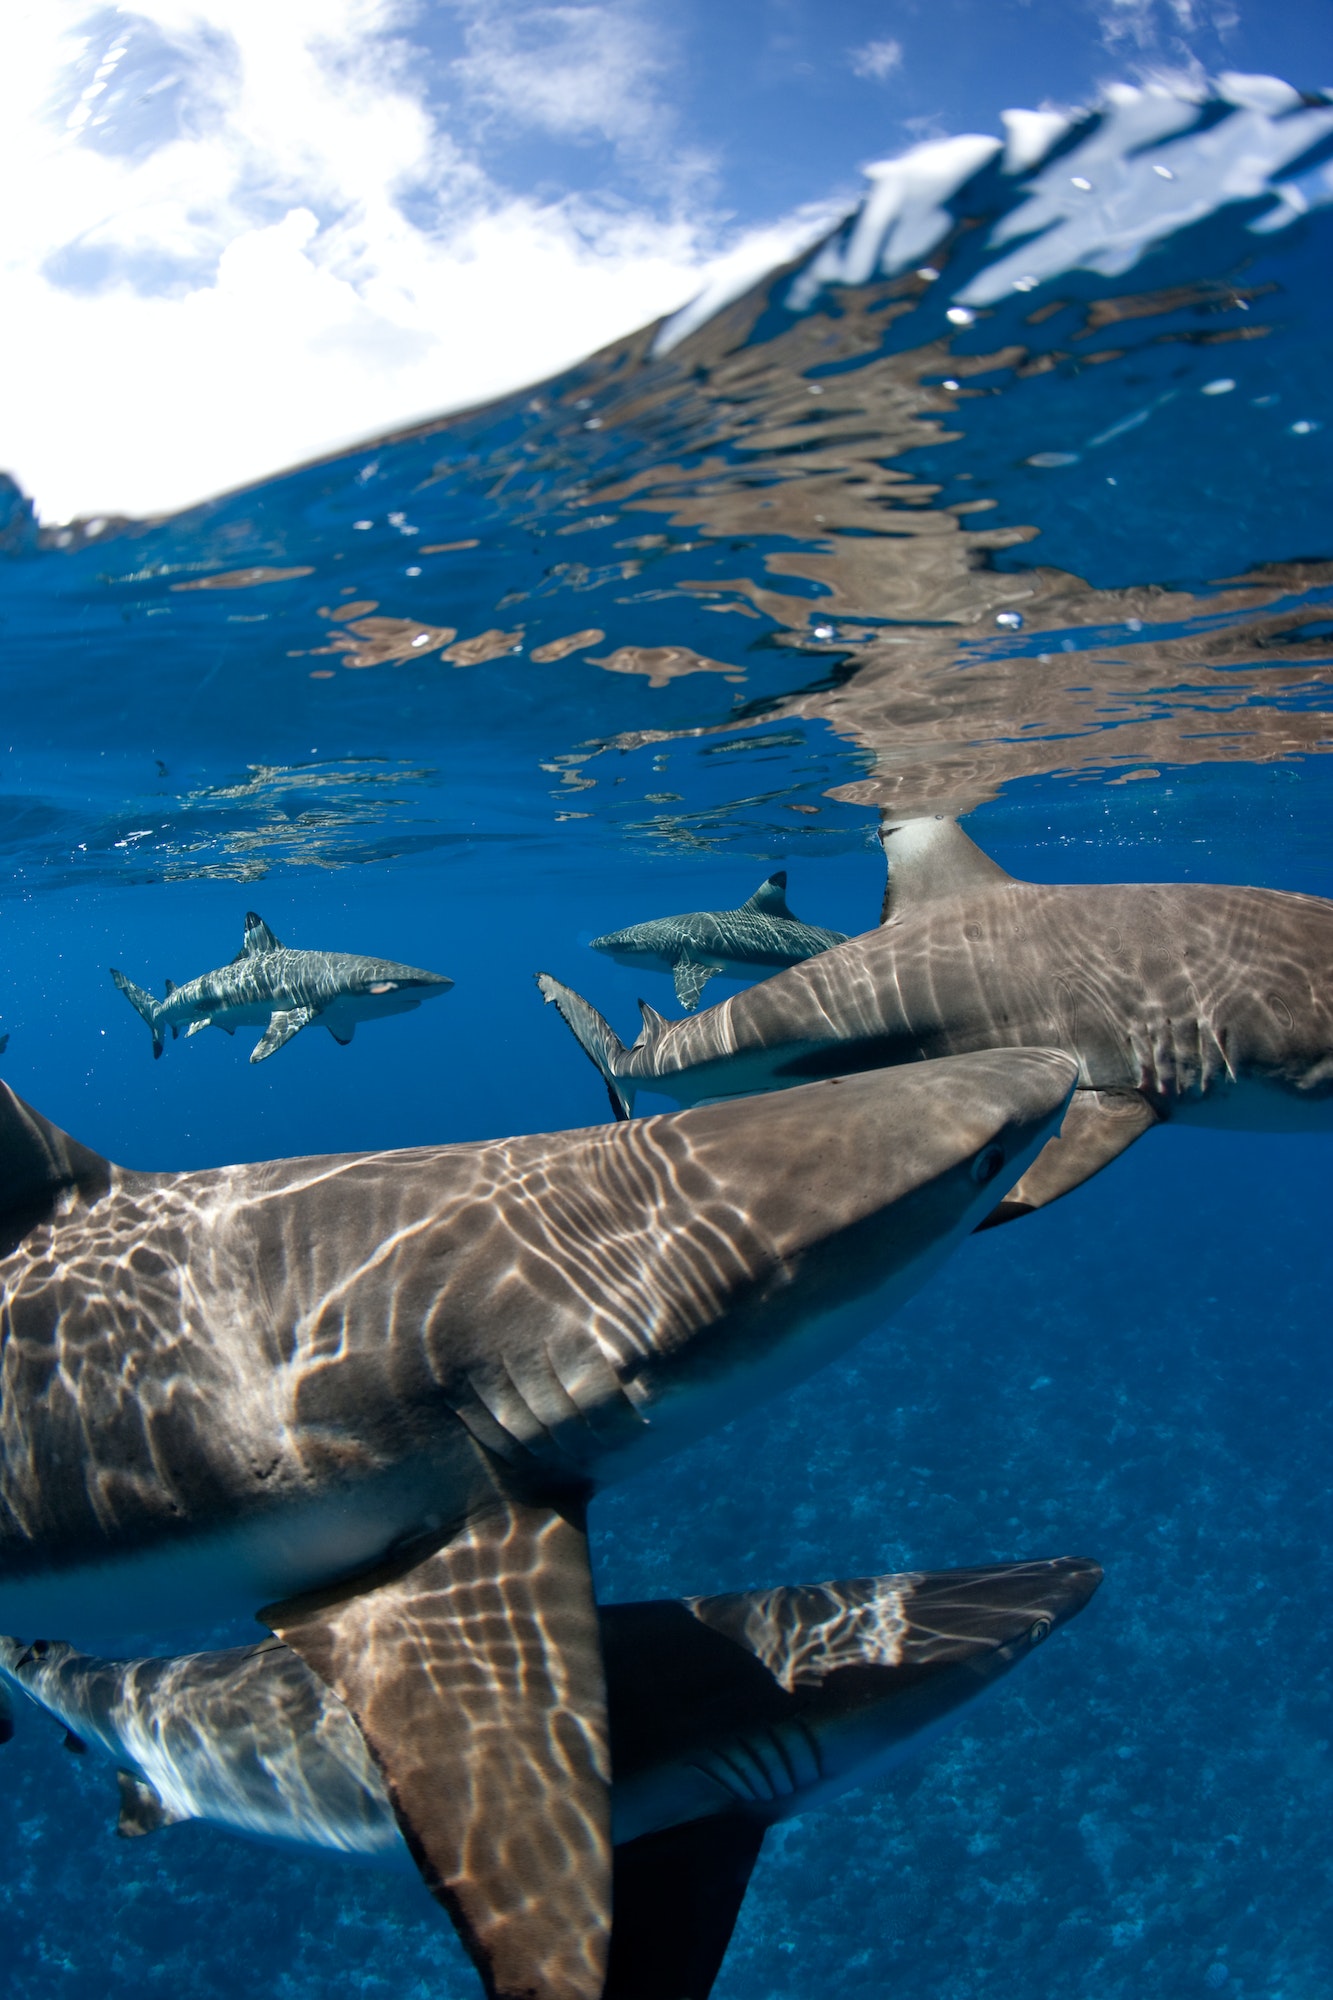 Blacktip reef sharks at surface.